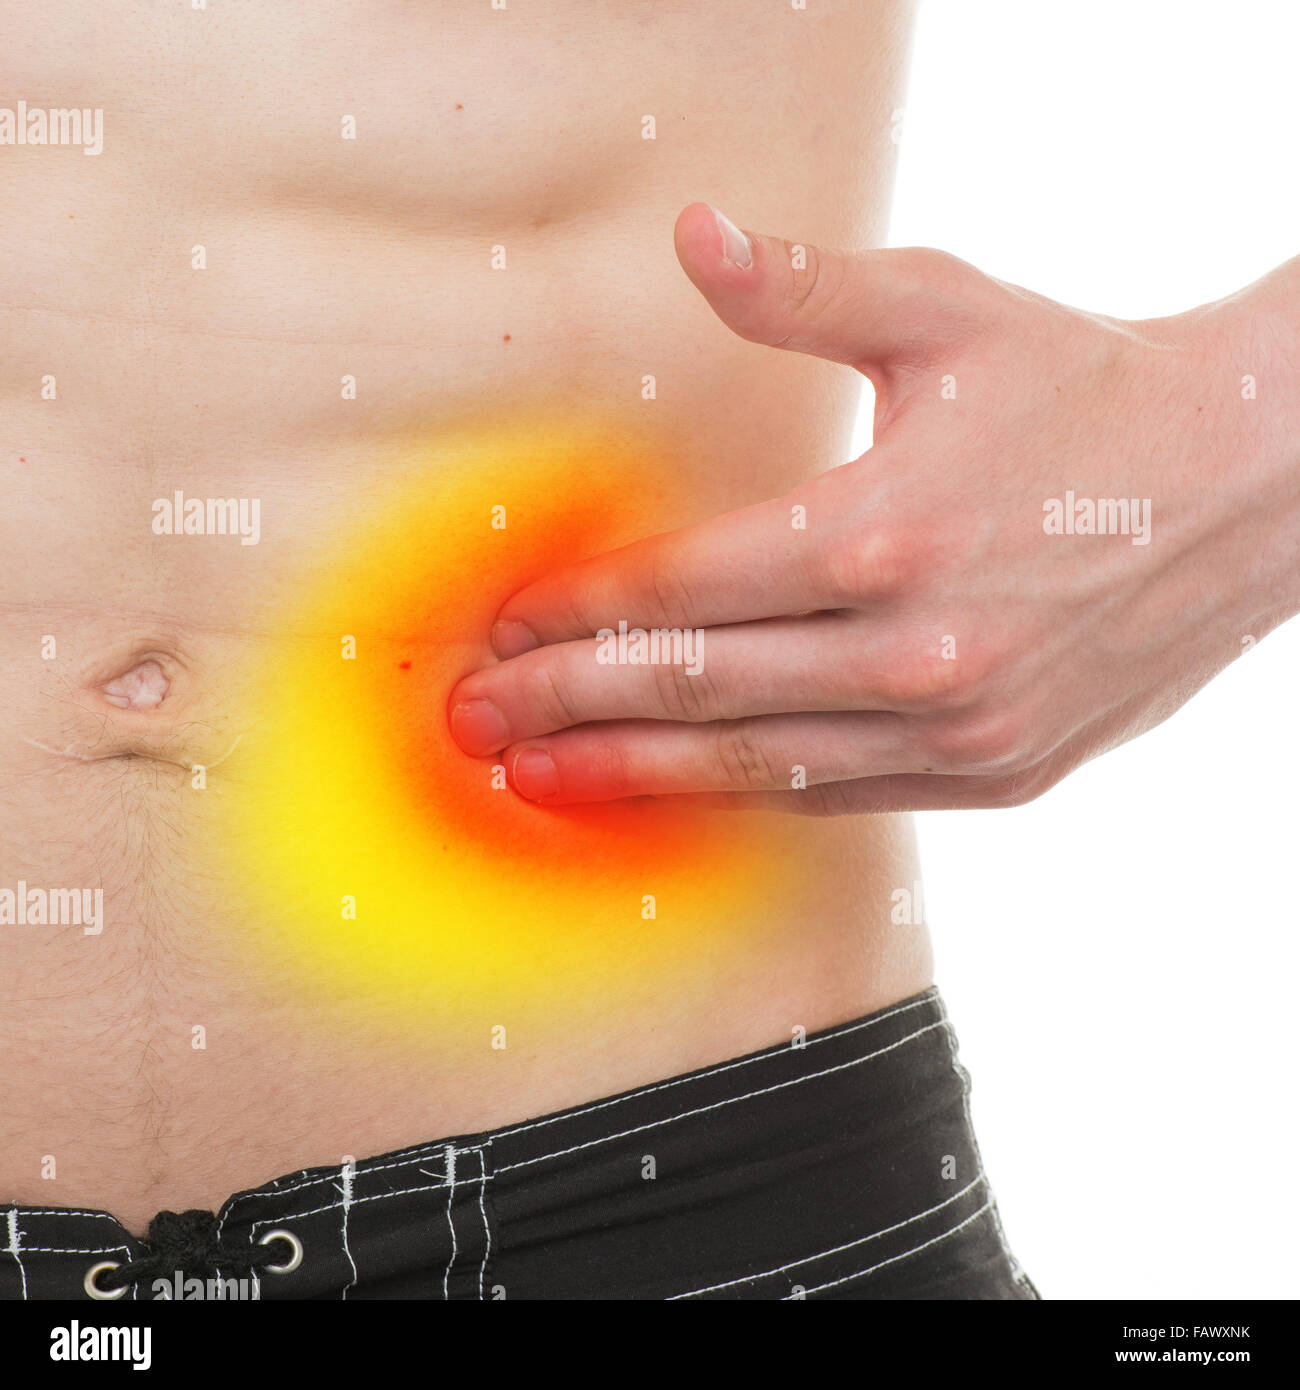 Douleur abdominale - Anatomie mâle douleur côté gauche isolé sur ...